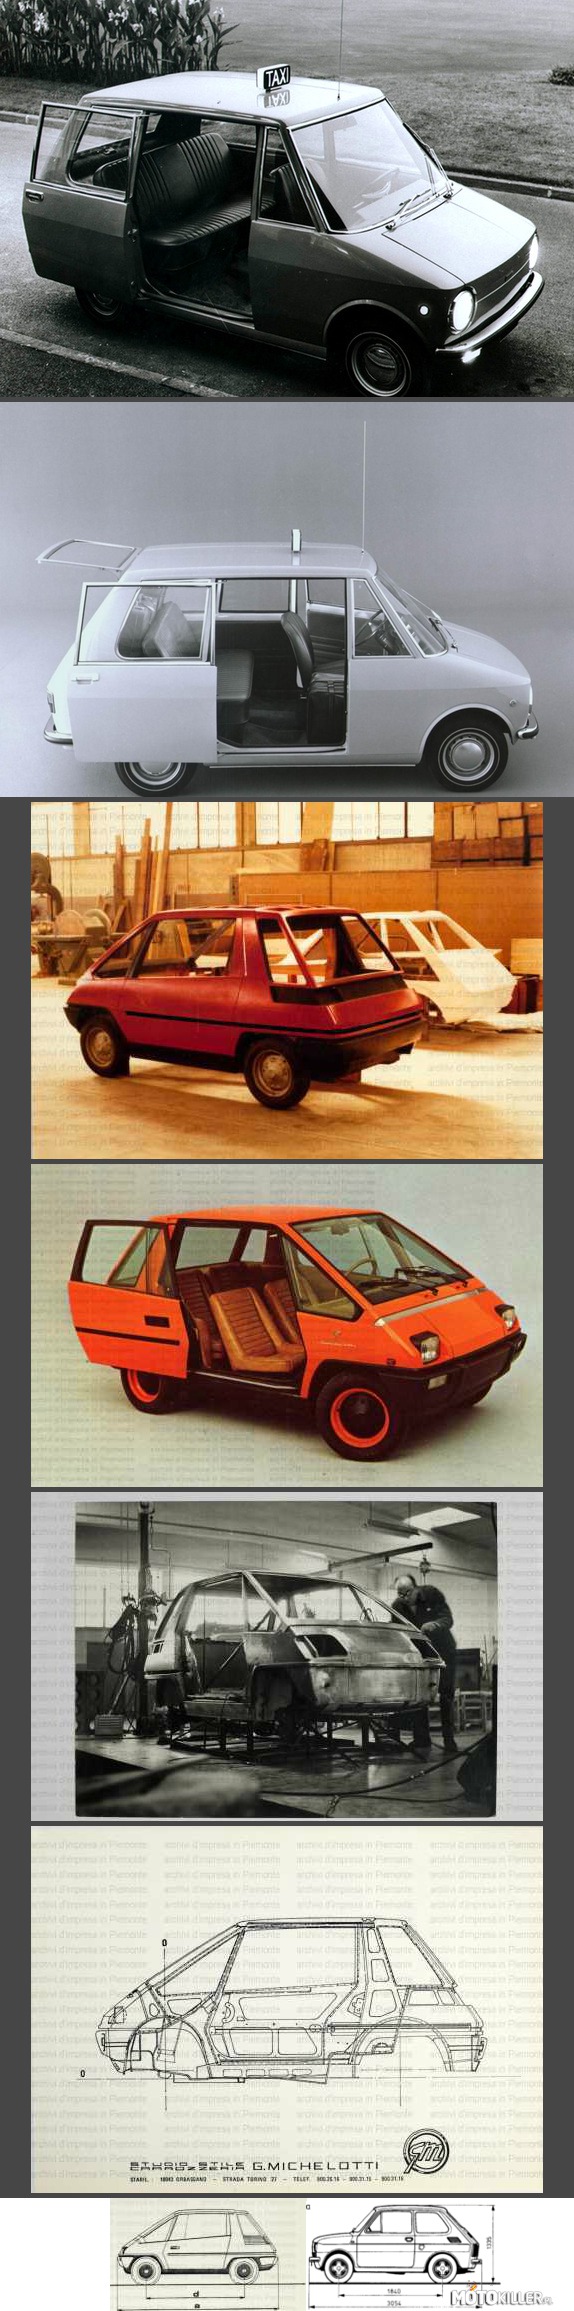 Fiat city taxi czyli prototyp 126 – fiat 126 geneza 
W sumie były 2 prototypy 

2 pierwsze zdjęcia przedstawiają pierwszy prototyp który miał być małą miejską taksówką do szybkiego przemieszczania się. Pomysł jednak się nie przeszedł. 2 prototyp już jako 126 (tak, oficjalny prototyp malana) był już mniejszy, 2 miejscowy, jednak pomysł na taki samochód też nie przyjął (przez modę na skutery która panowała wtedy we Włoszech). Po tym jak Fiat zamówił serią samochodów  u Giugiaro która przewidywała mały 4 miejscowy samochód, Włoski projektant wyrysował 126 tak by wyglądem nawiązywała do 500 (126 miał zastąpić ten model stąd podobieństwo) jak i do city taxi, tak więc 126 to kawadratowa 500&apos;tka 